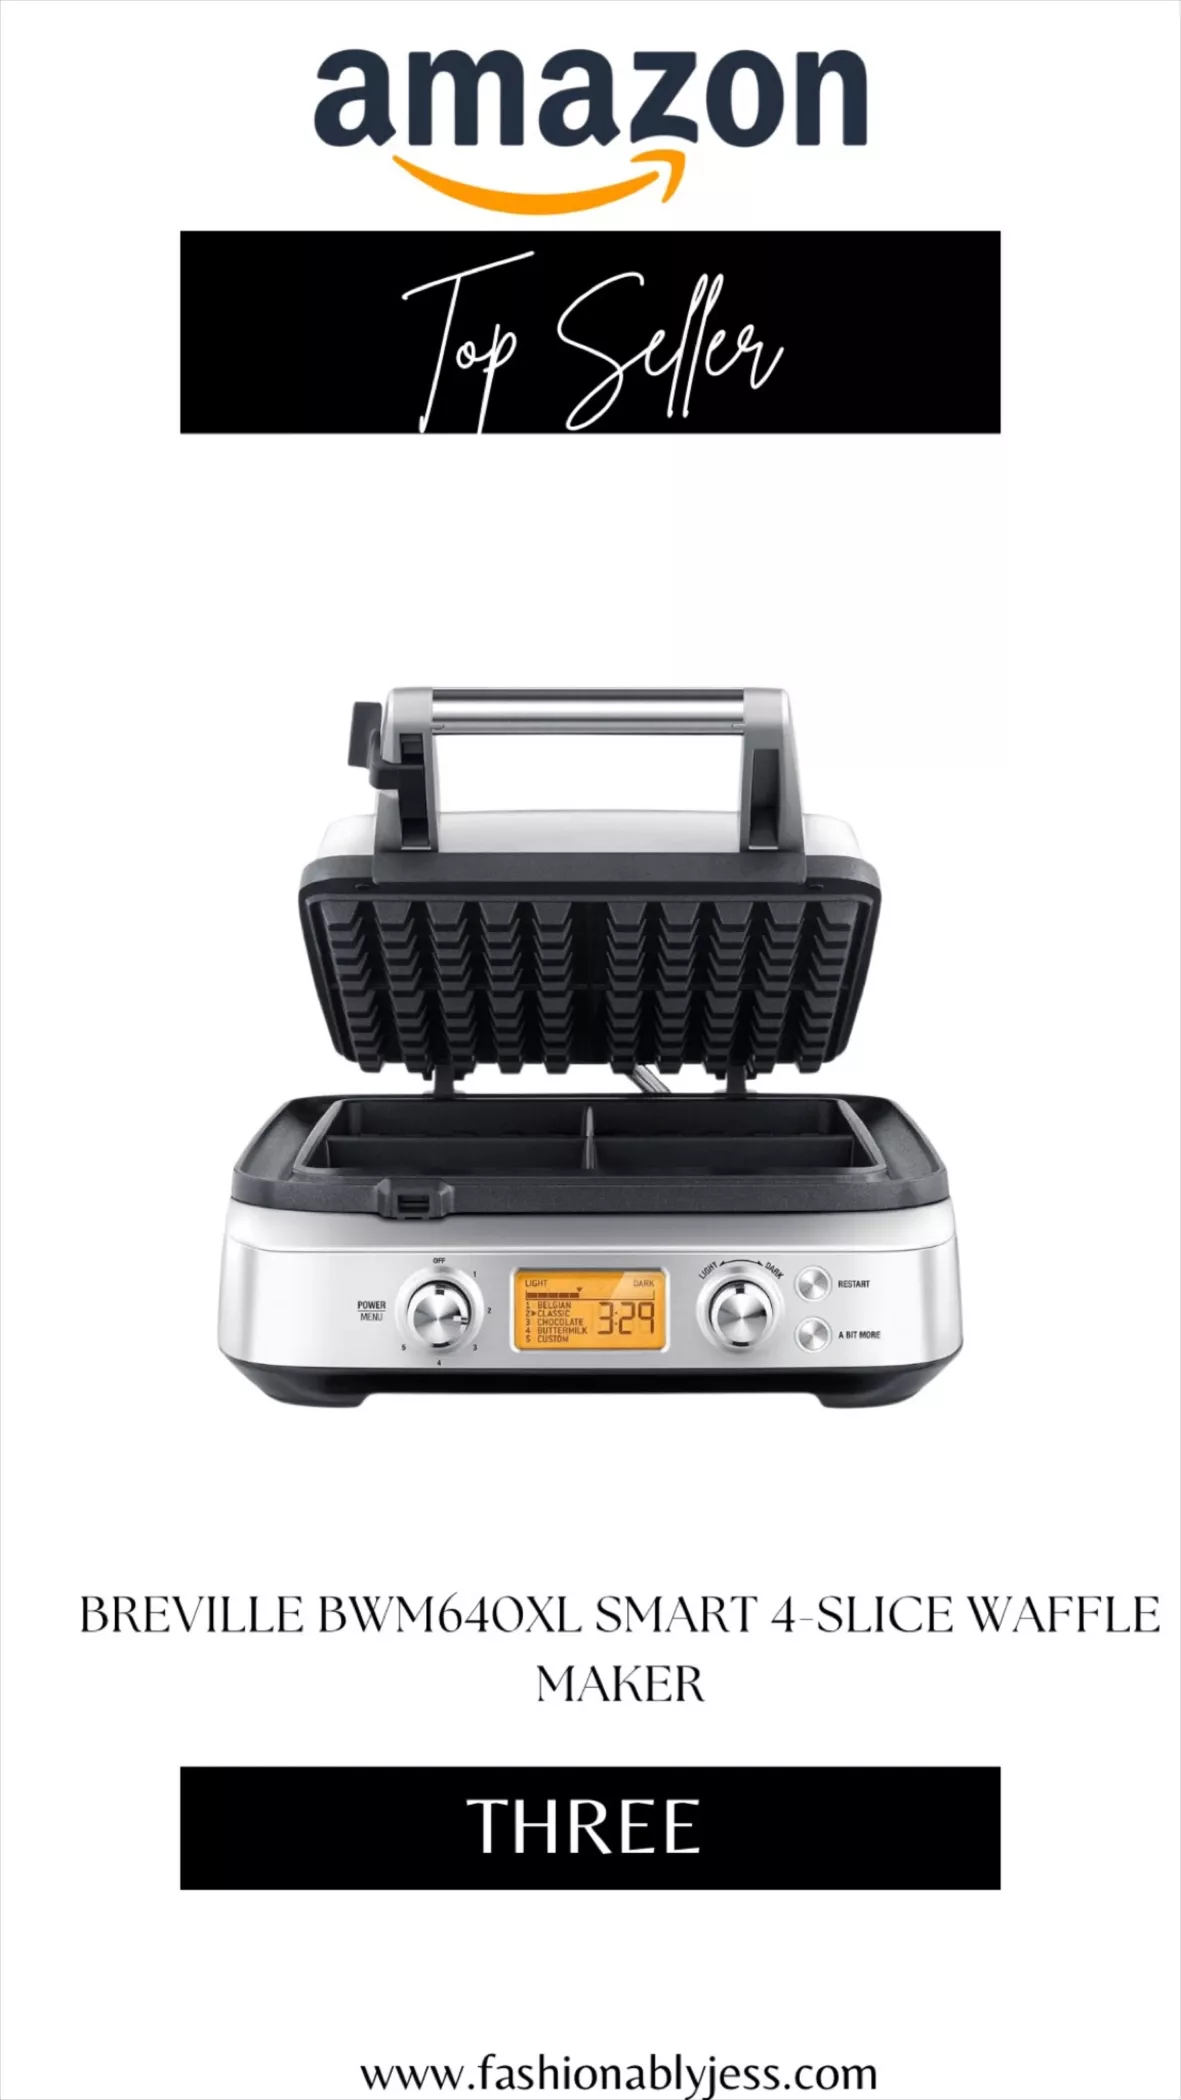 Breville 4-Square Smart Waffle Maker